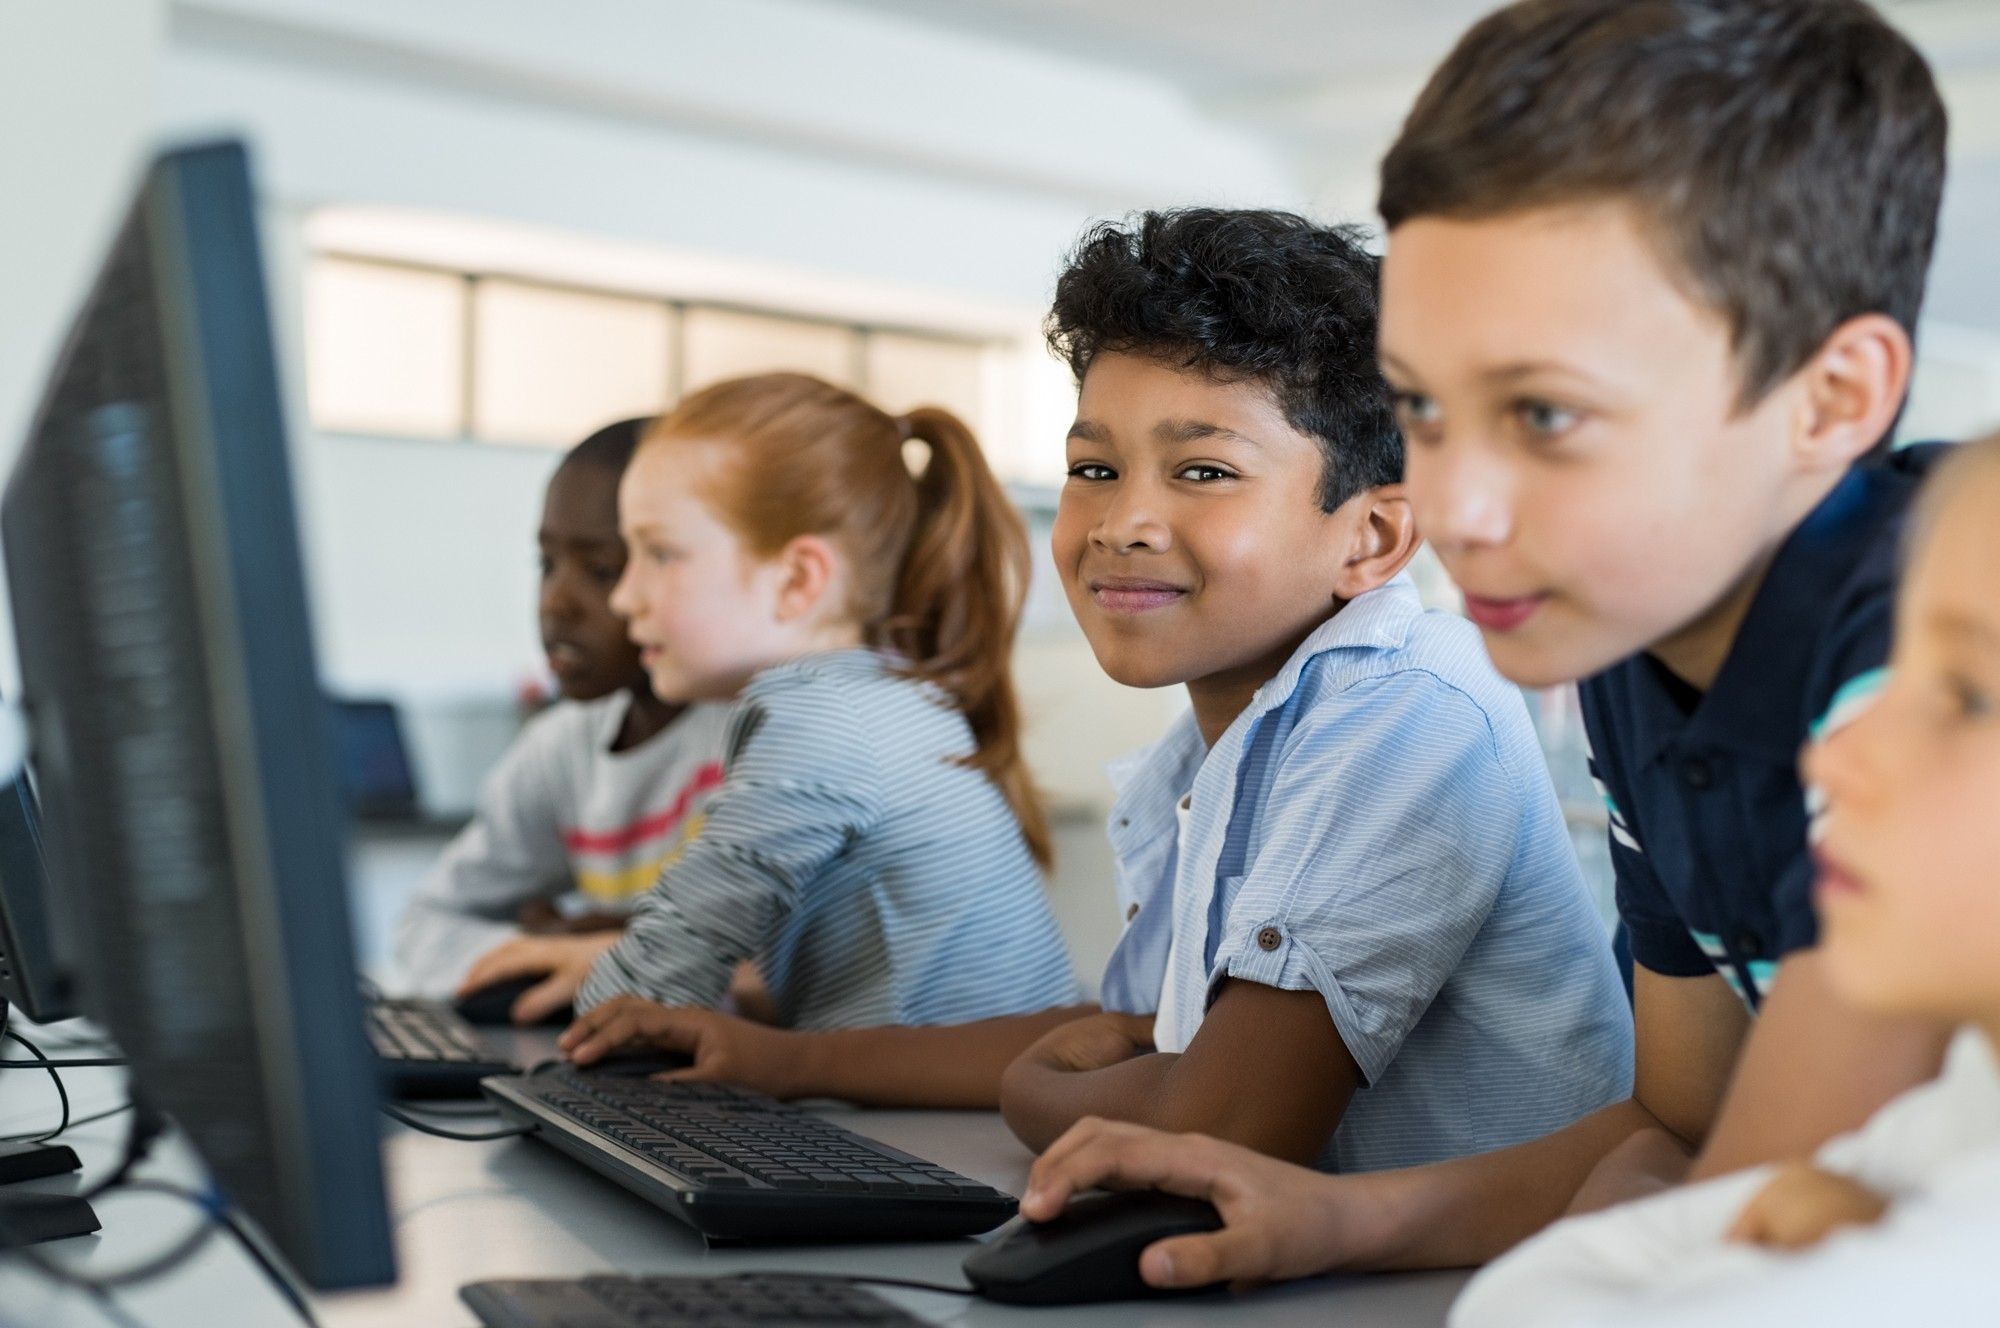 Children using computer in school